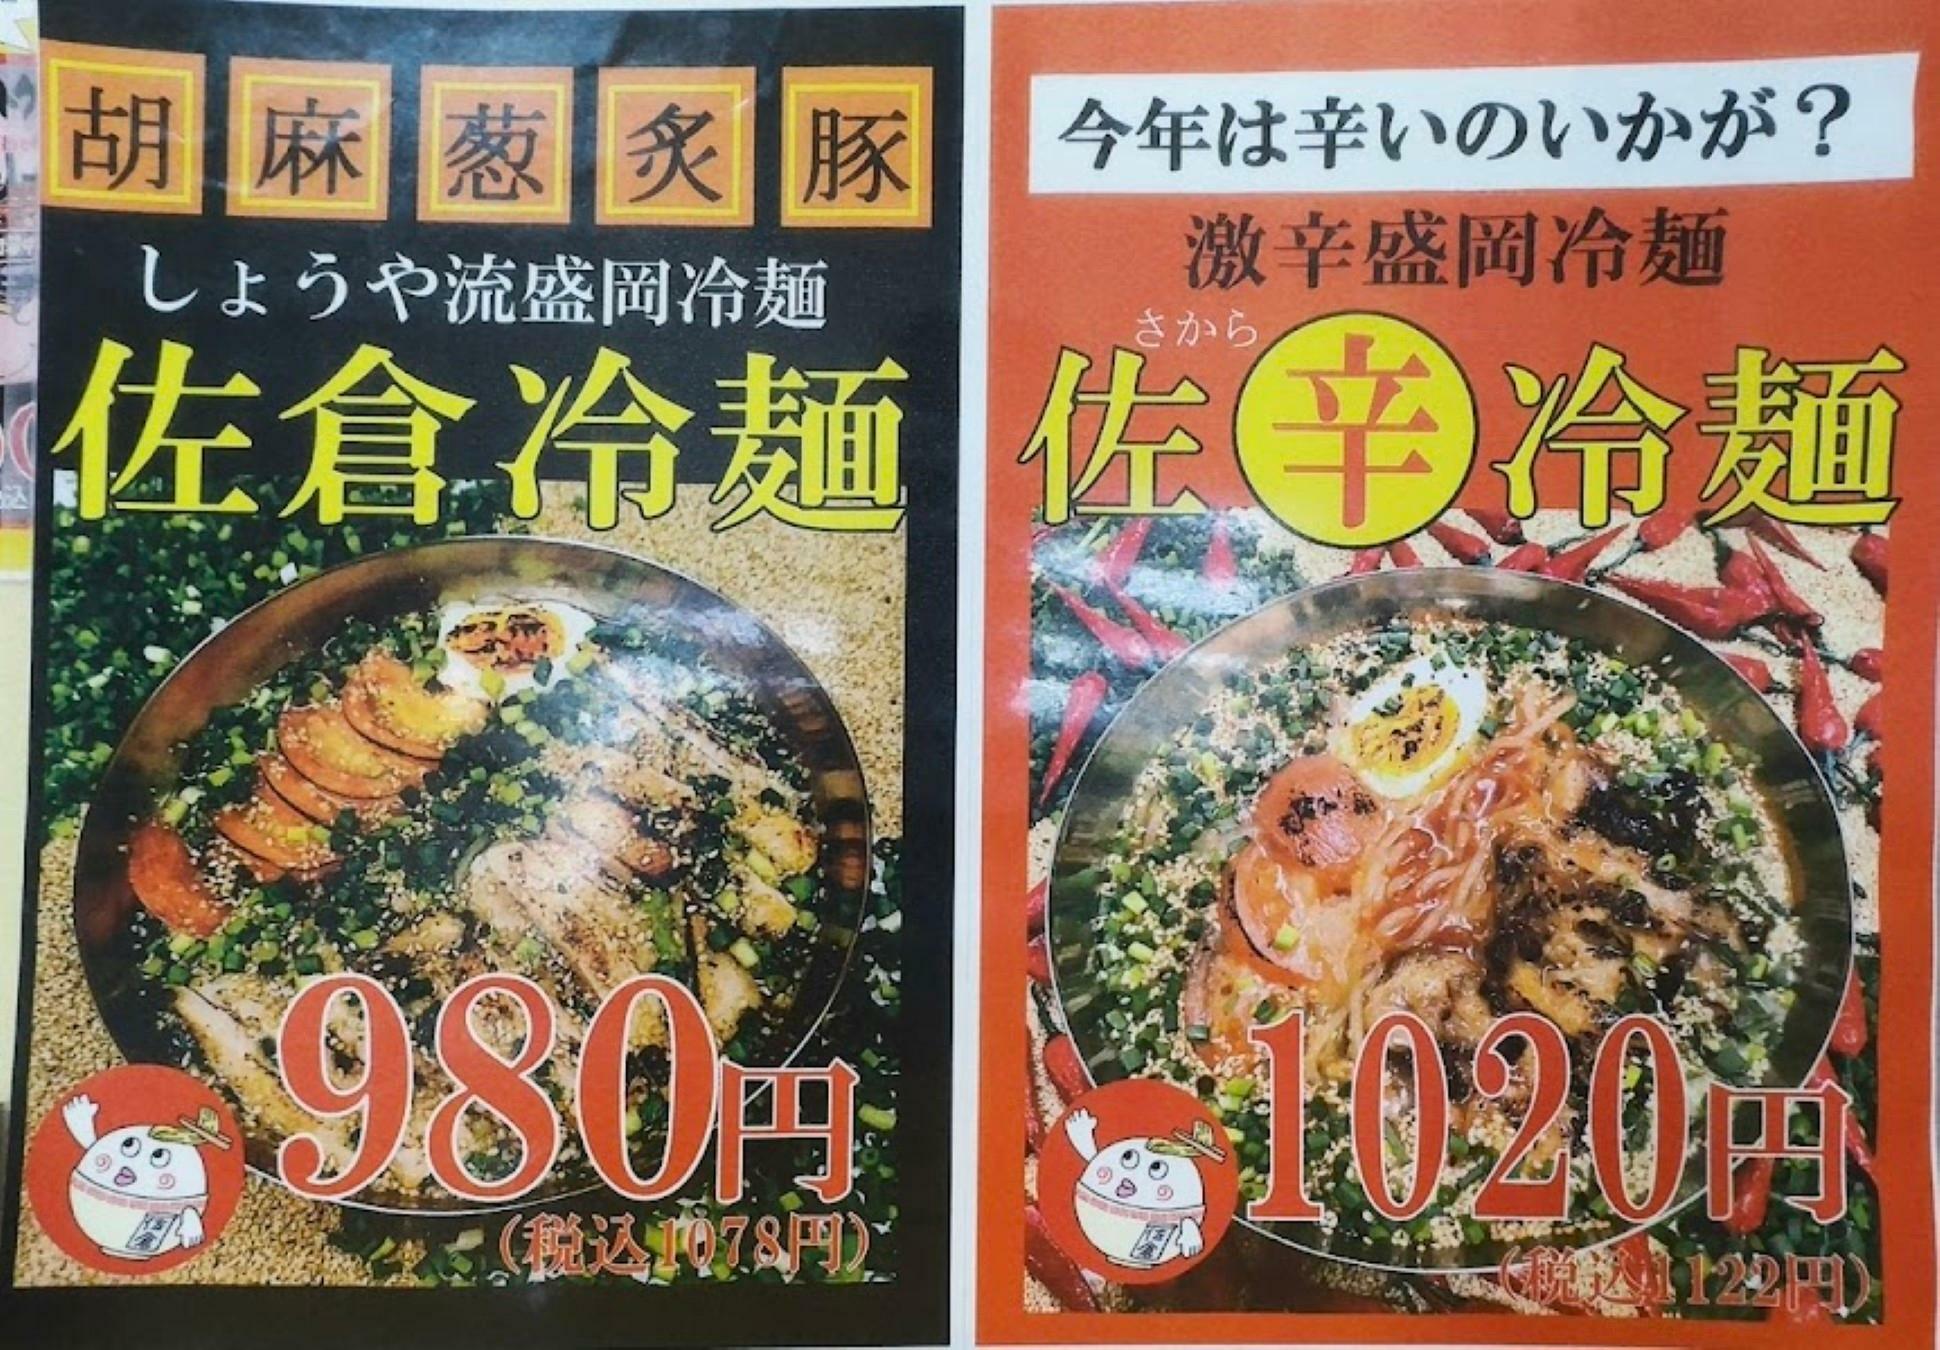 胡麻葱炙豚の佐倉冷麺と新発売の佐辛冷麺。